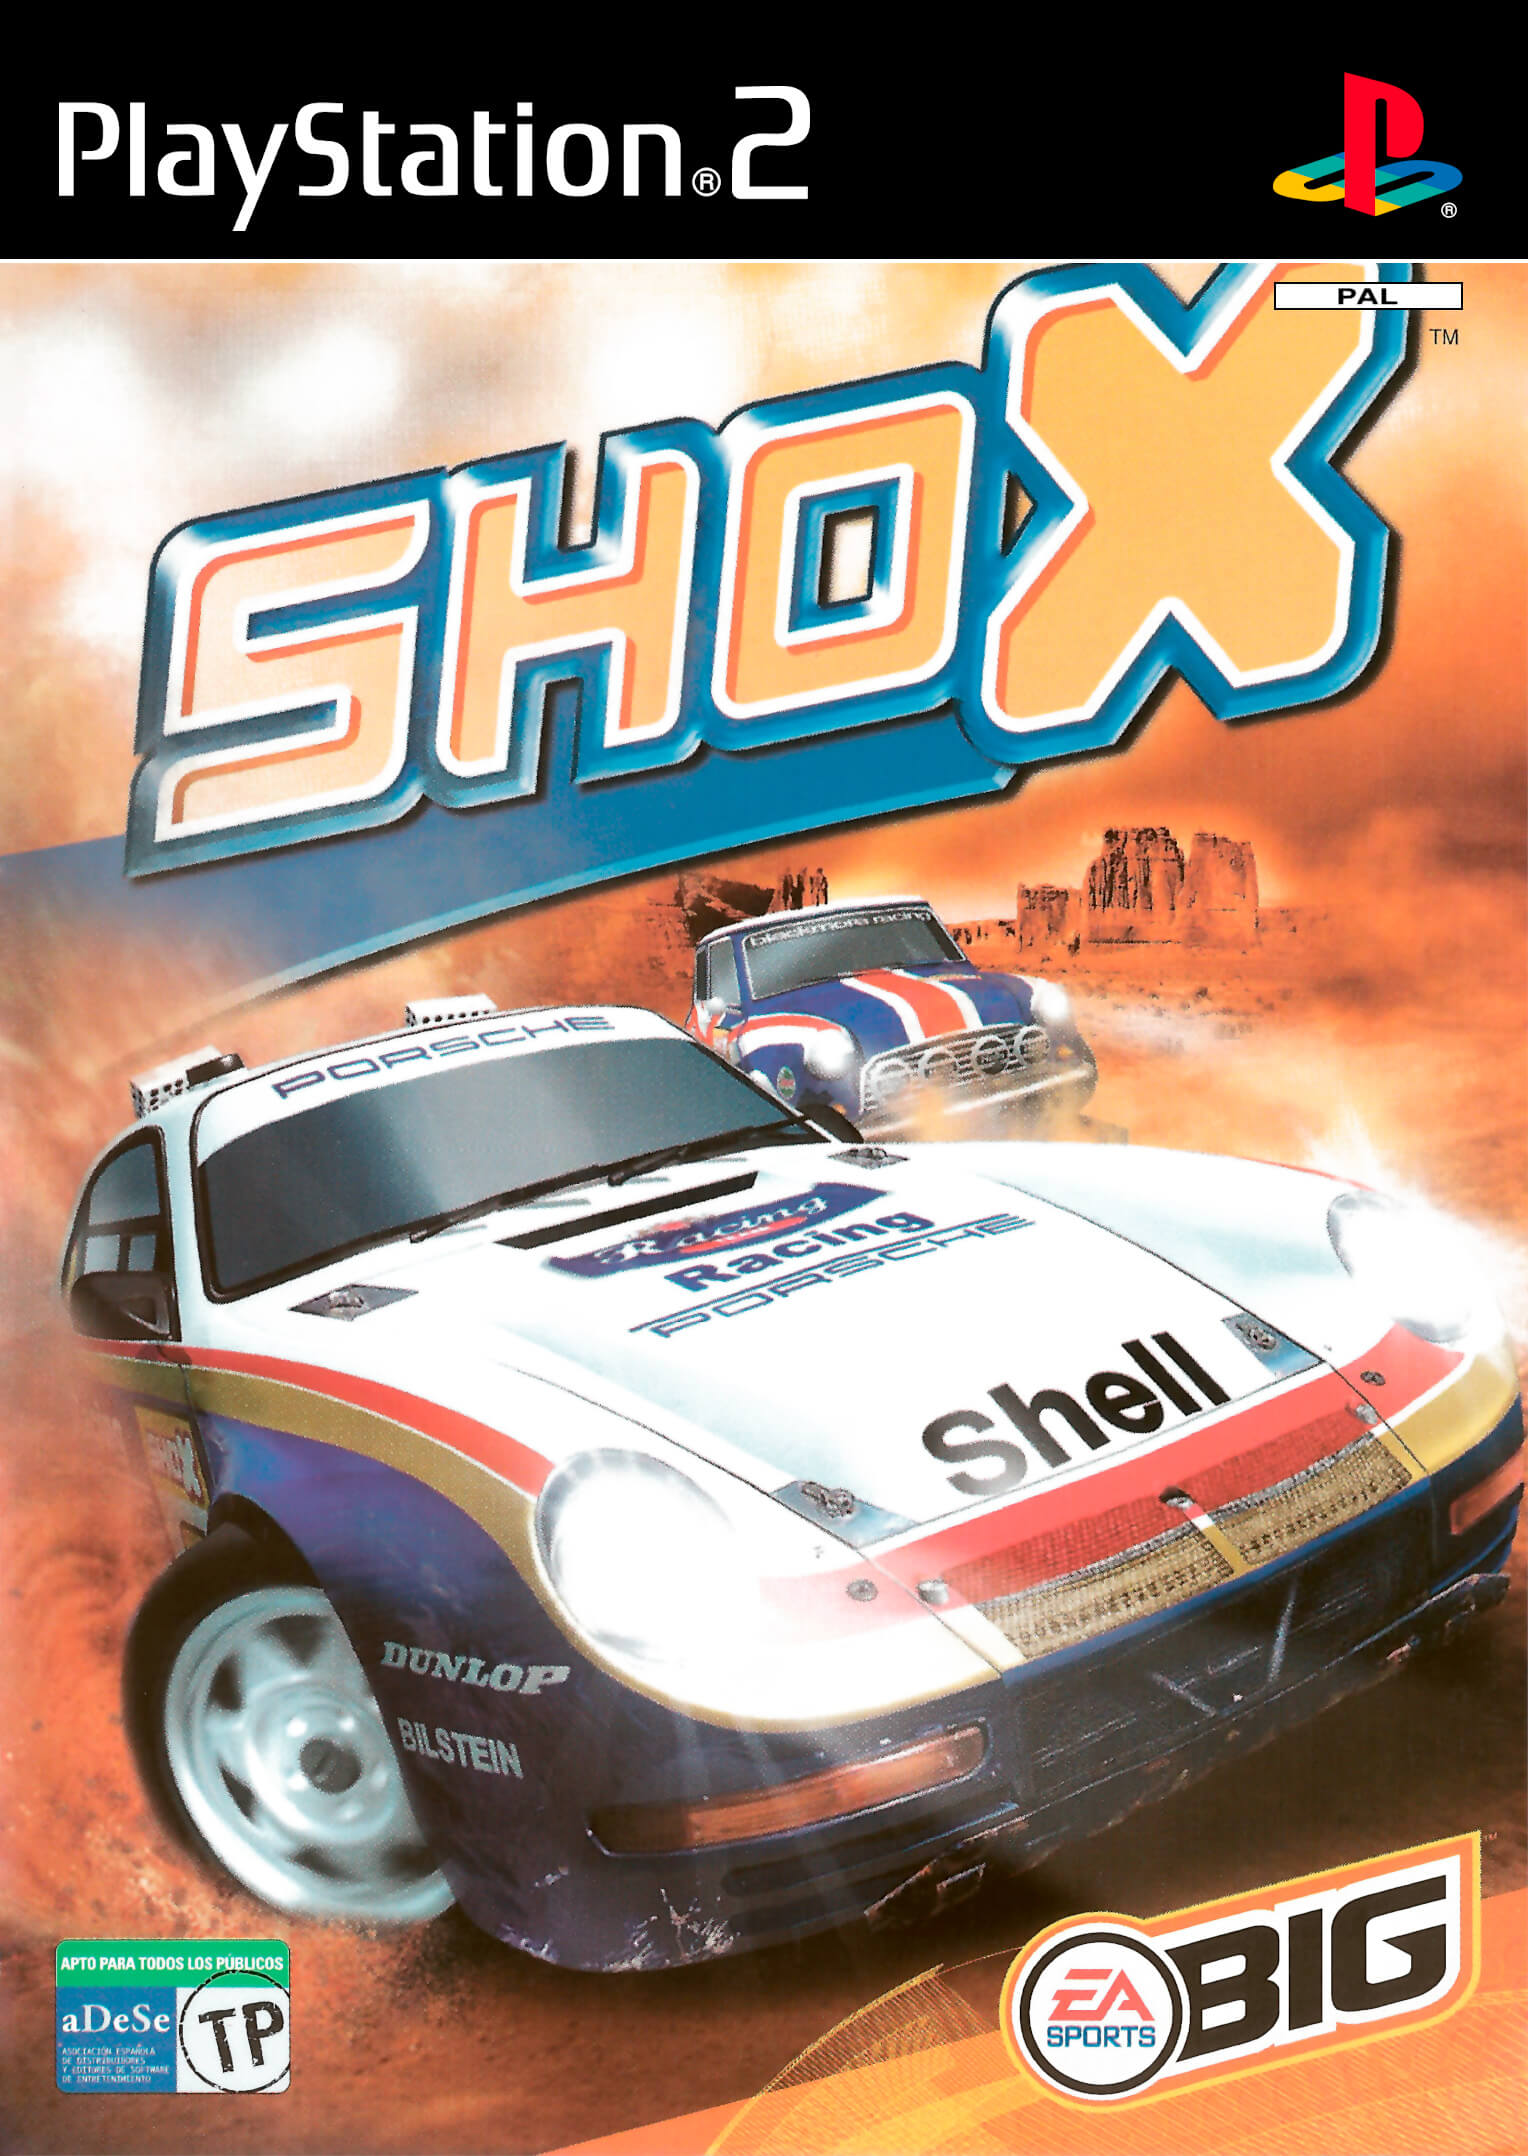 Гонки на пс 2. Shox ps2. Shox Rally reinvented. Гонки на ps2. PLAYSTATION 2 гонки.